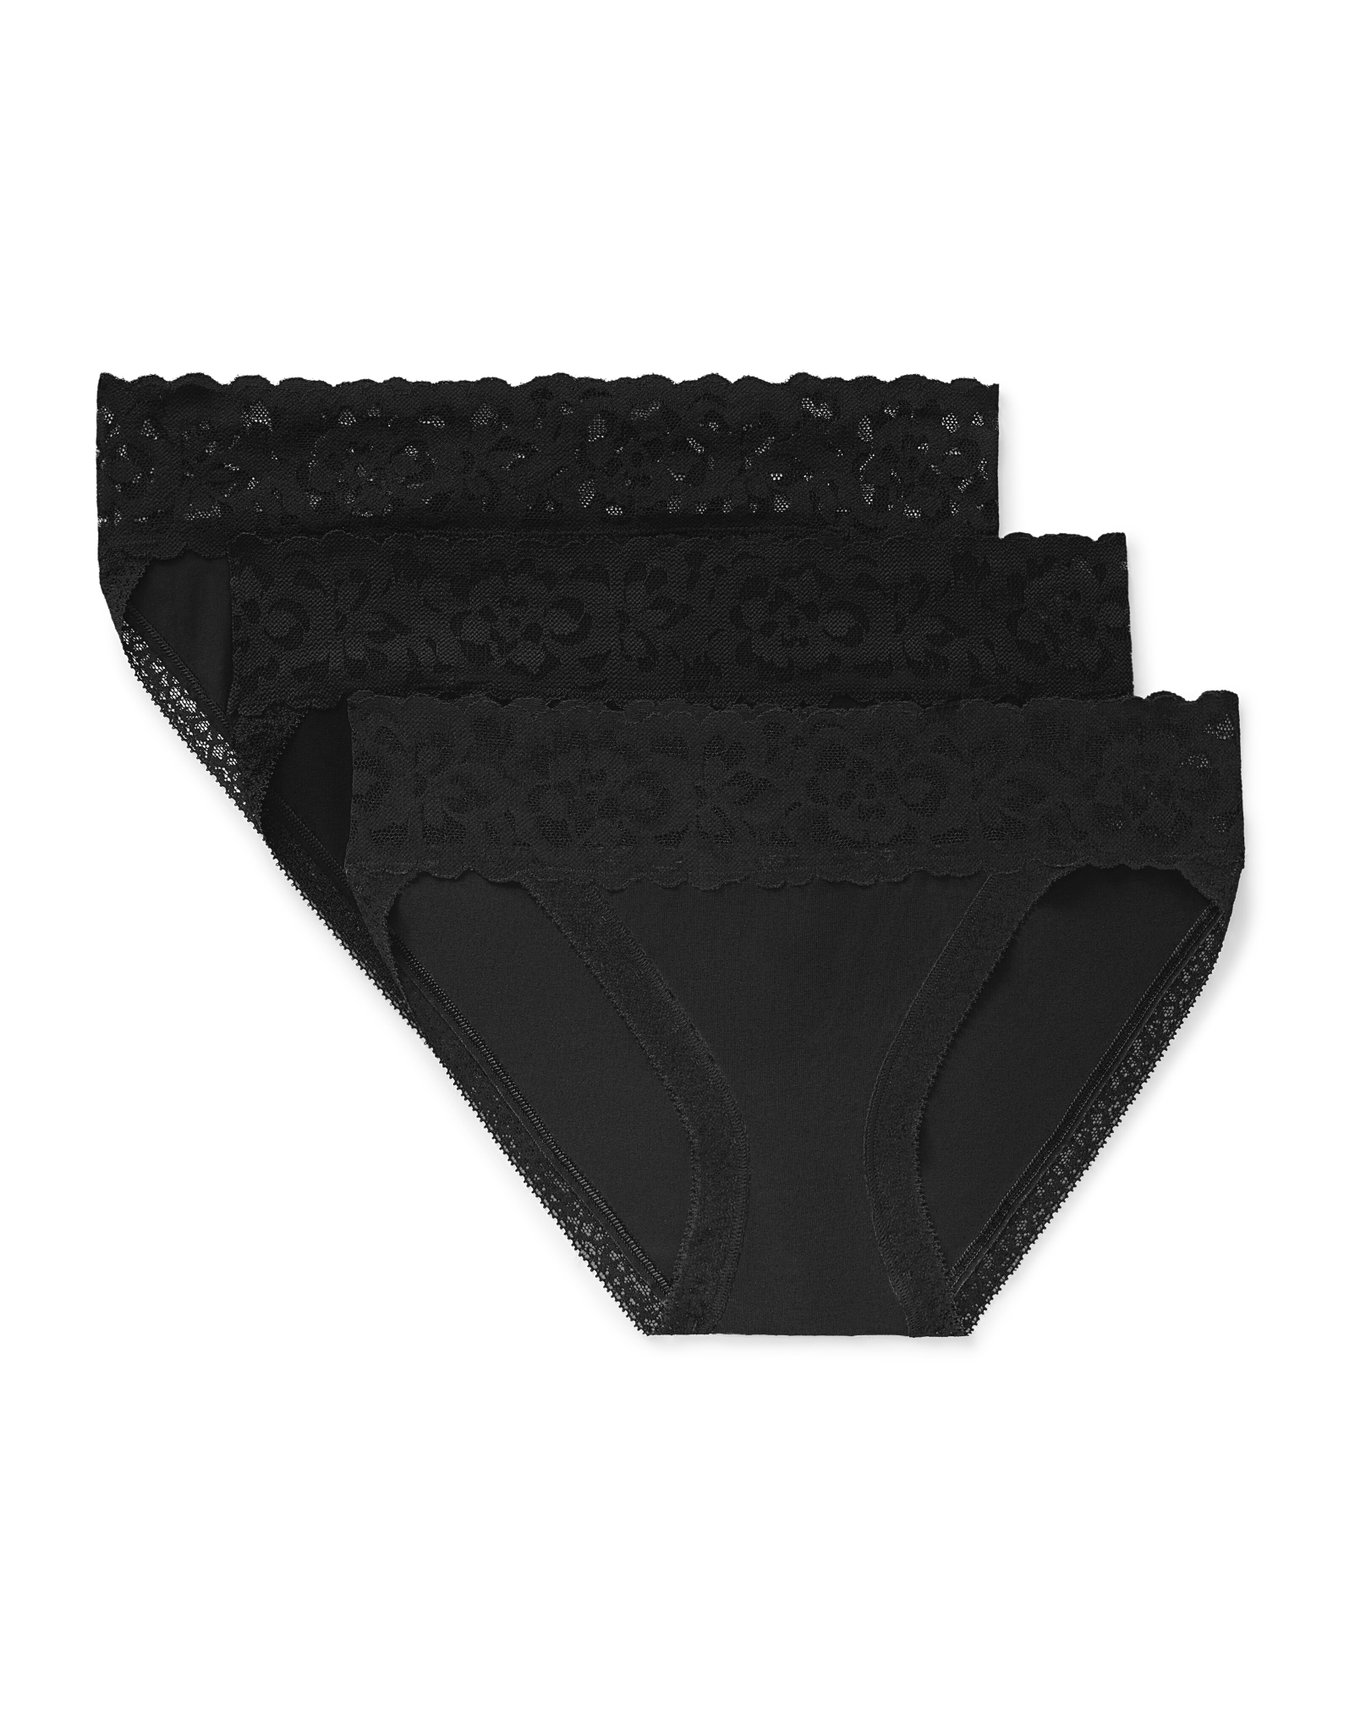 Pack Of 2 Women's Black Brief Cotton UnderWear (Black)